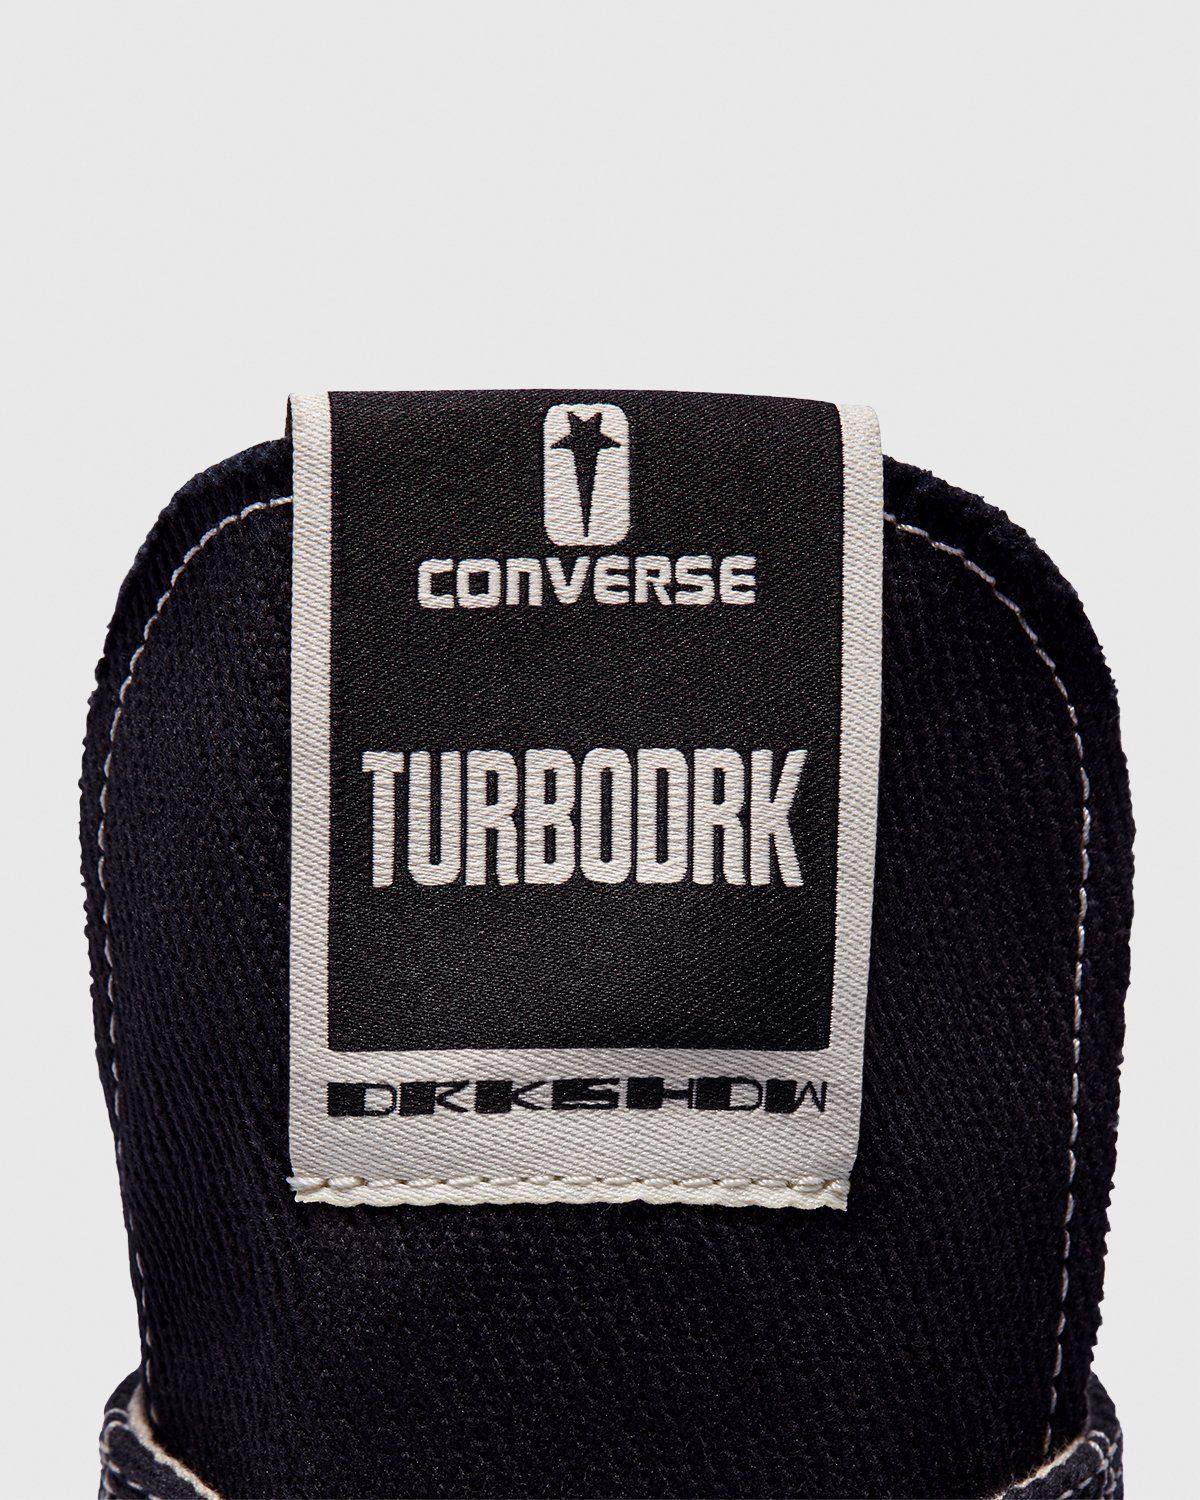 Converse – DRKSHDW TURBODRK Chuck 70 Black - Sneakers - Black - Image 7